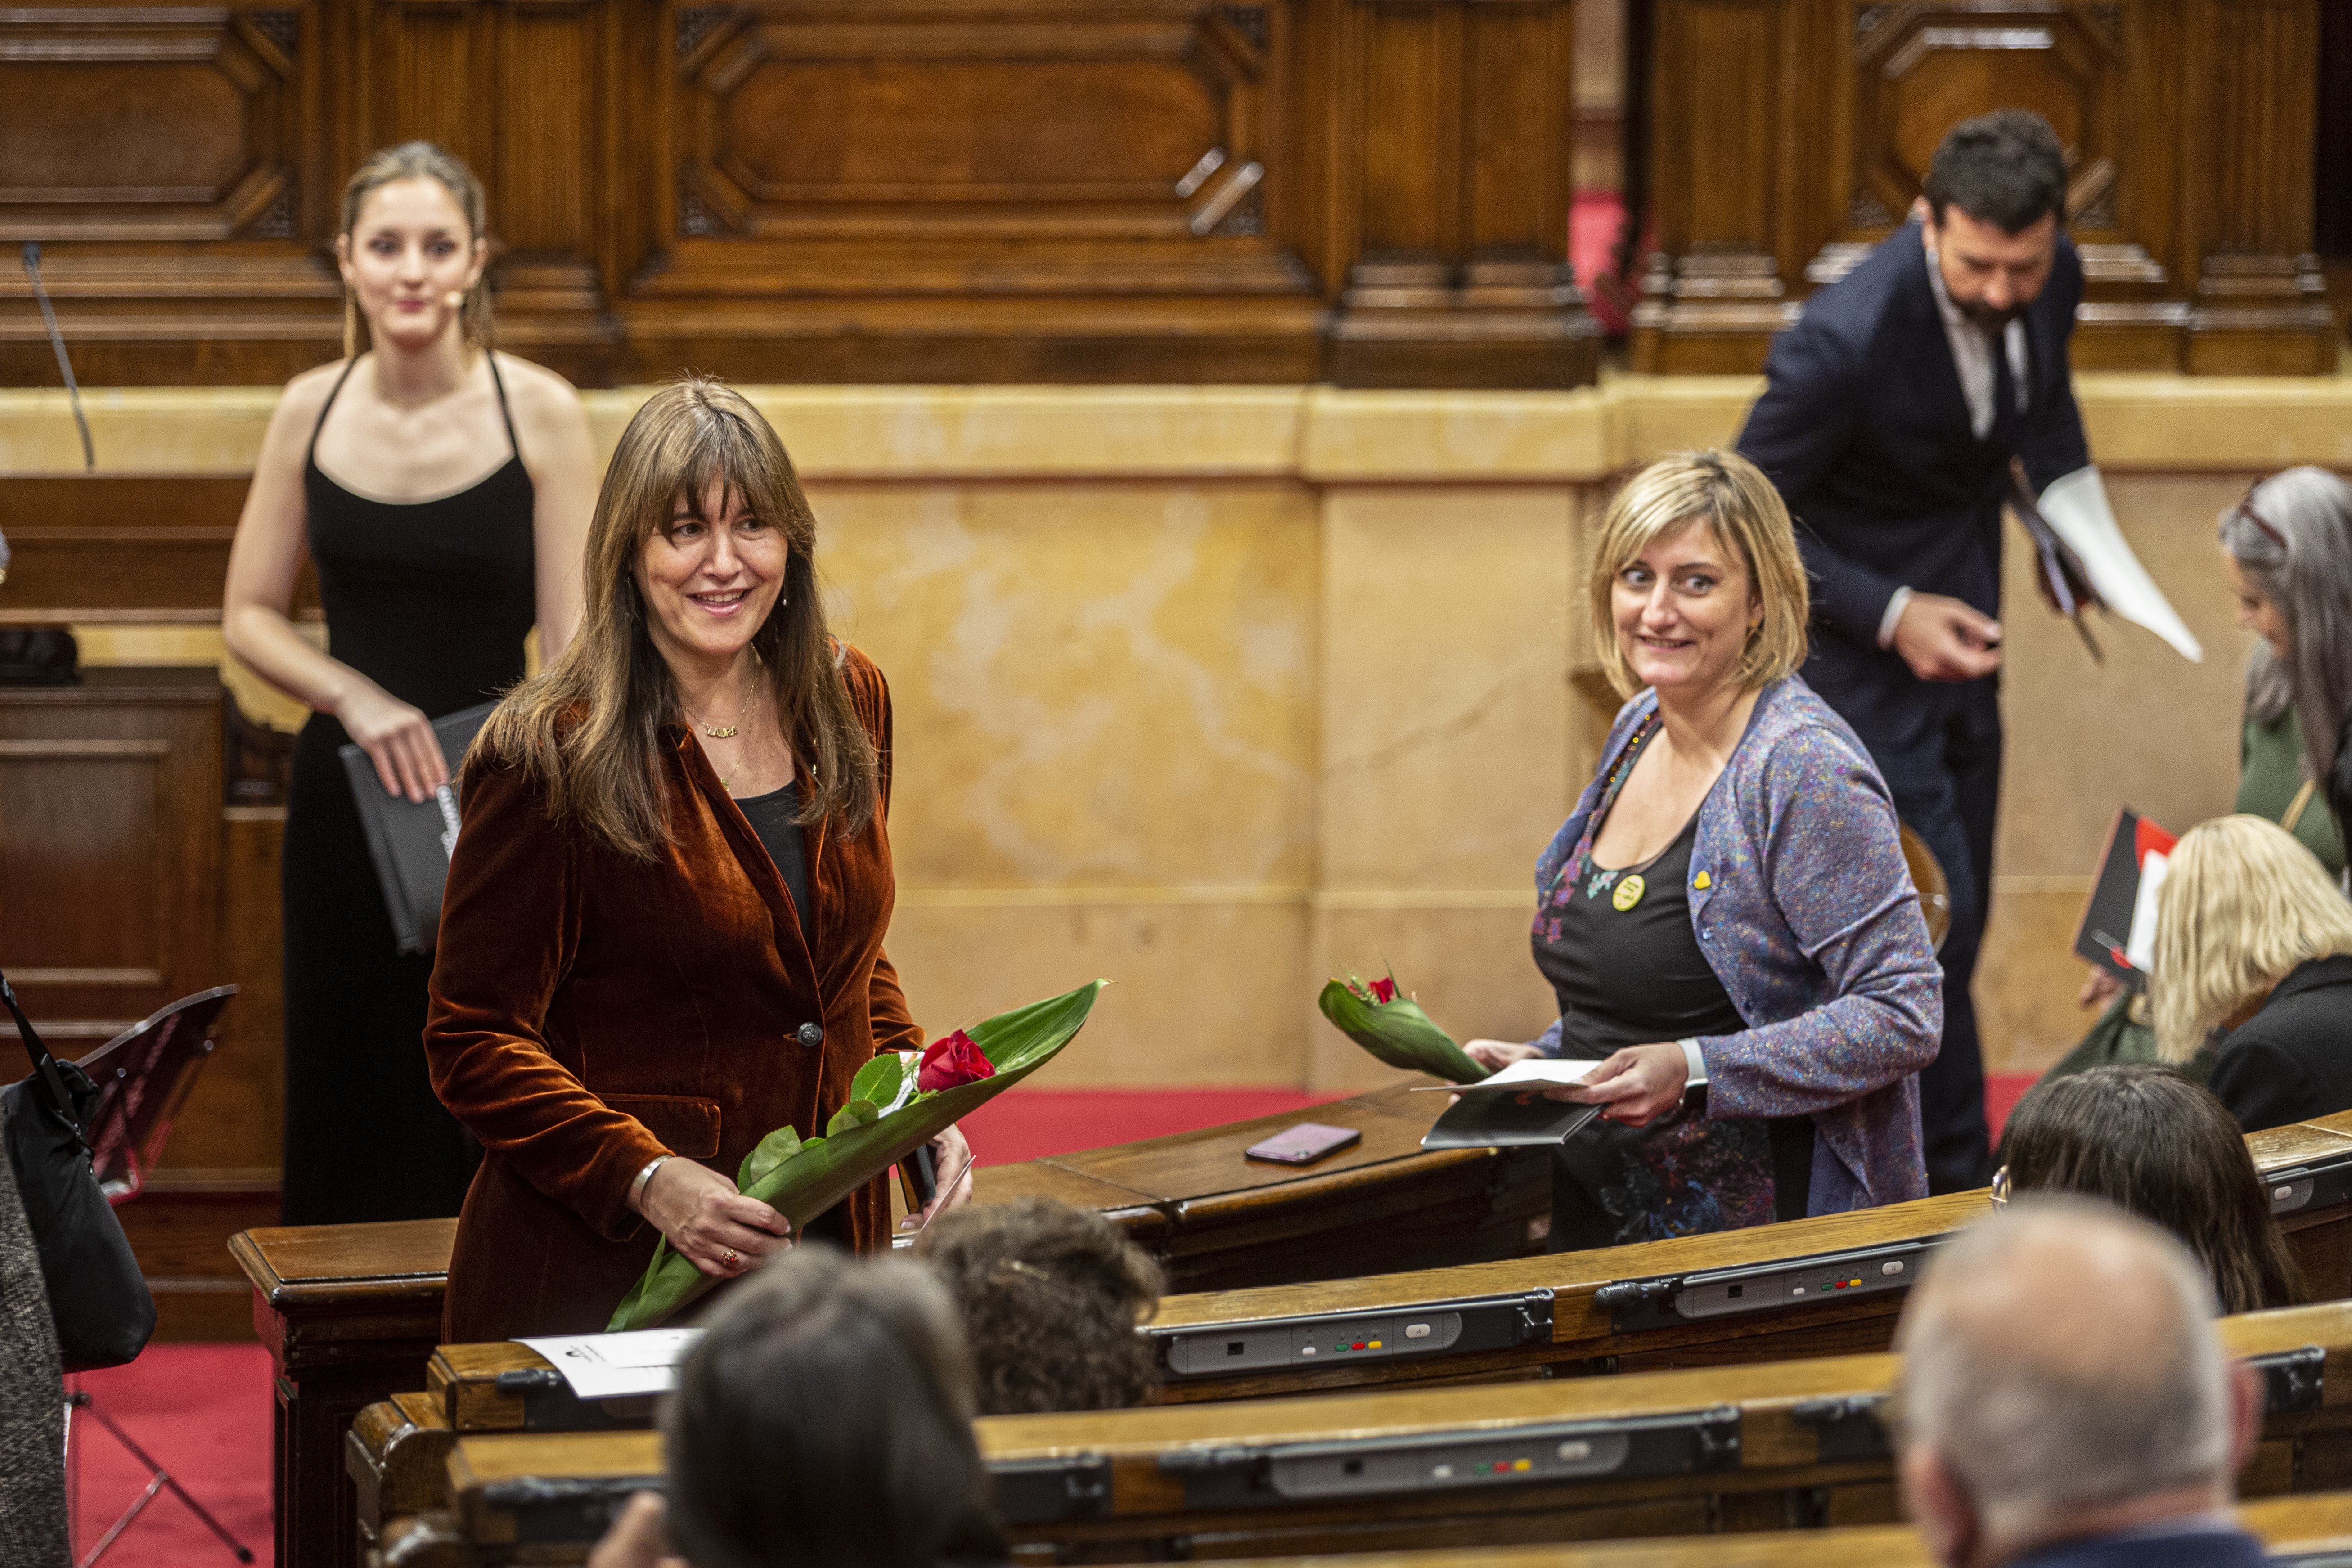 El Parlament celebra Sant Jordi amb una lectura de textos que reivindica la dona